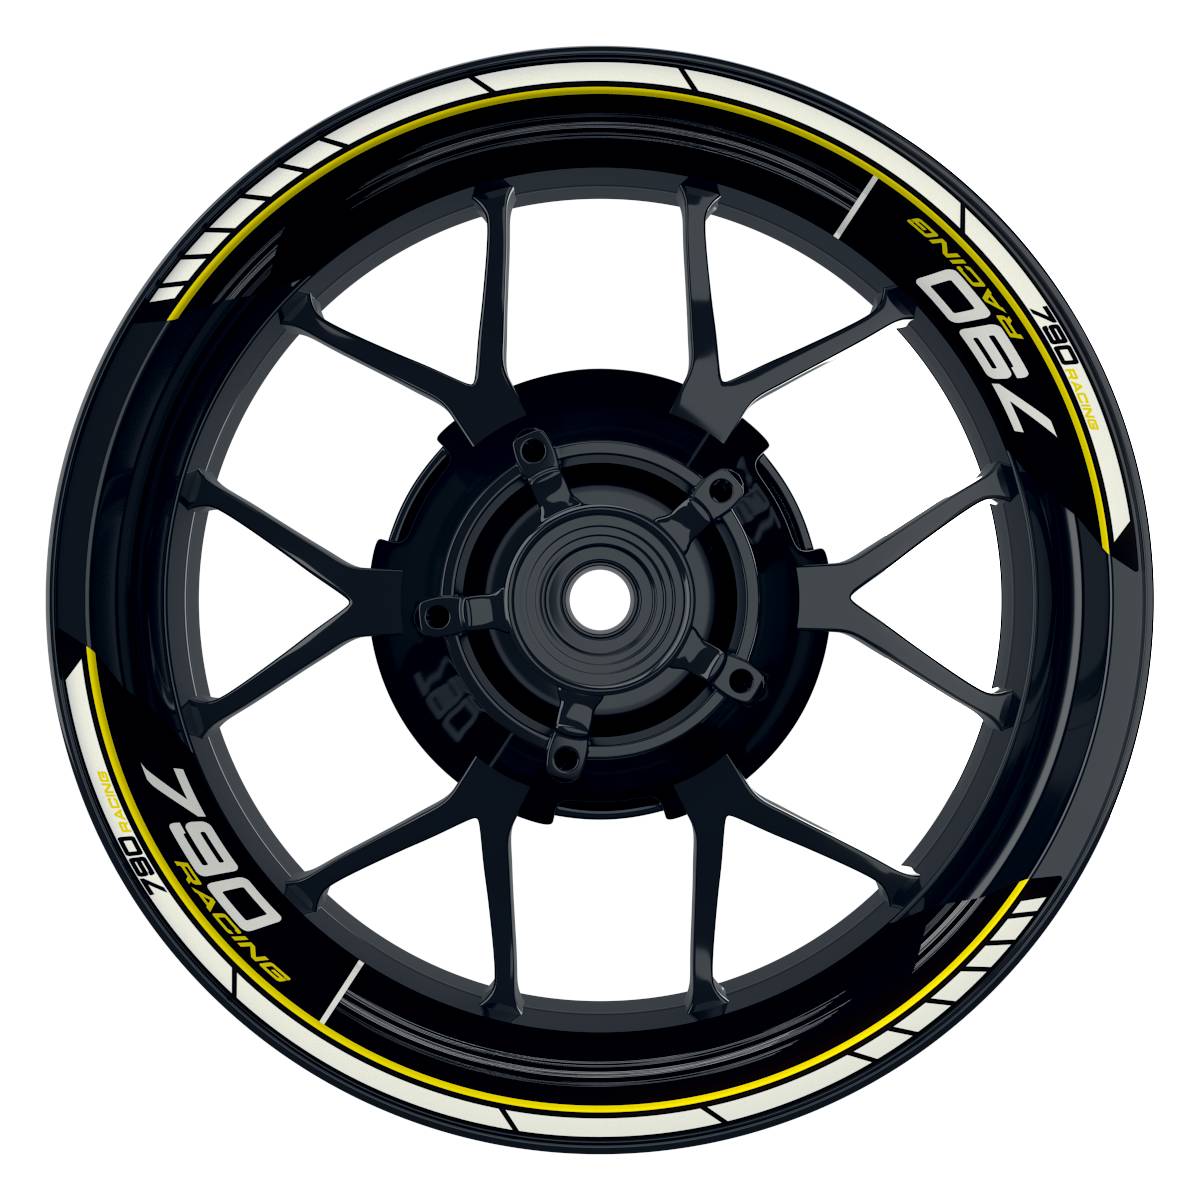 KTM Racing 790 Scratched schwarz gelb Frontansicht